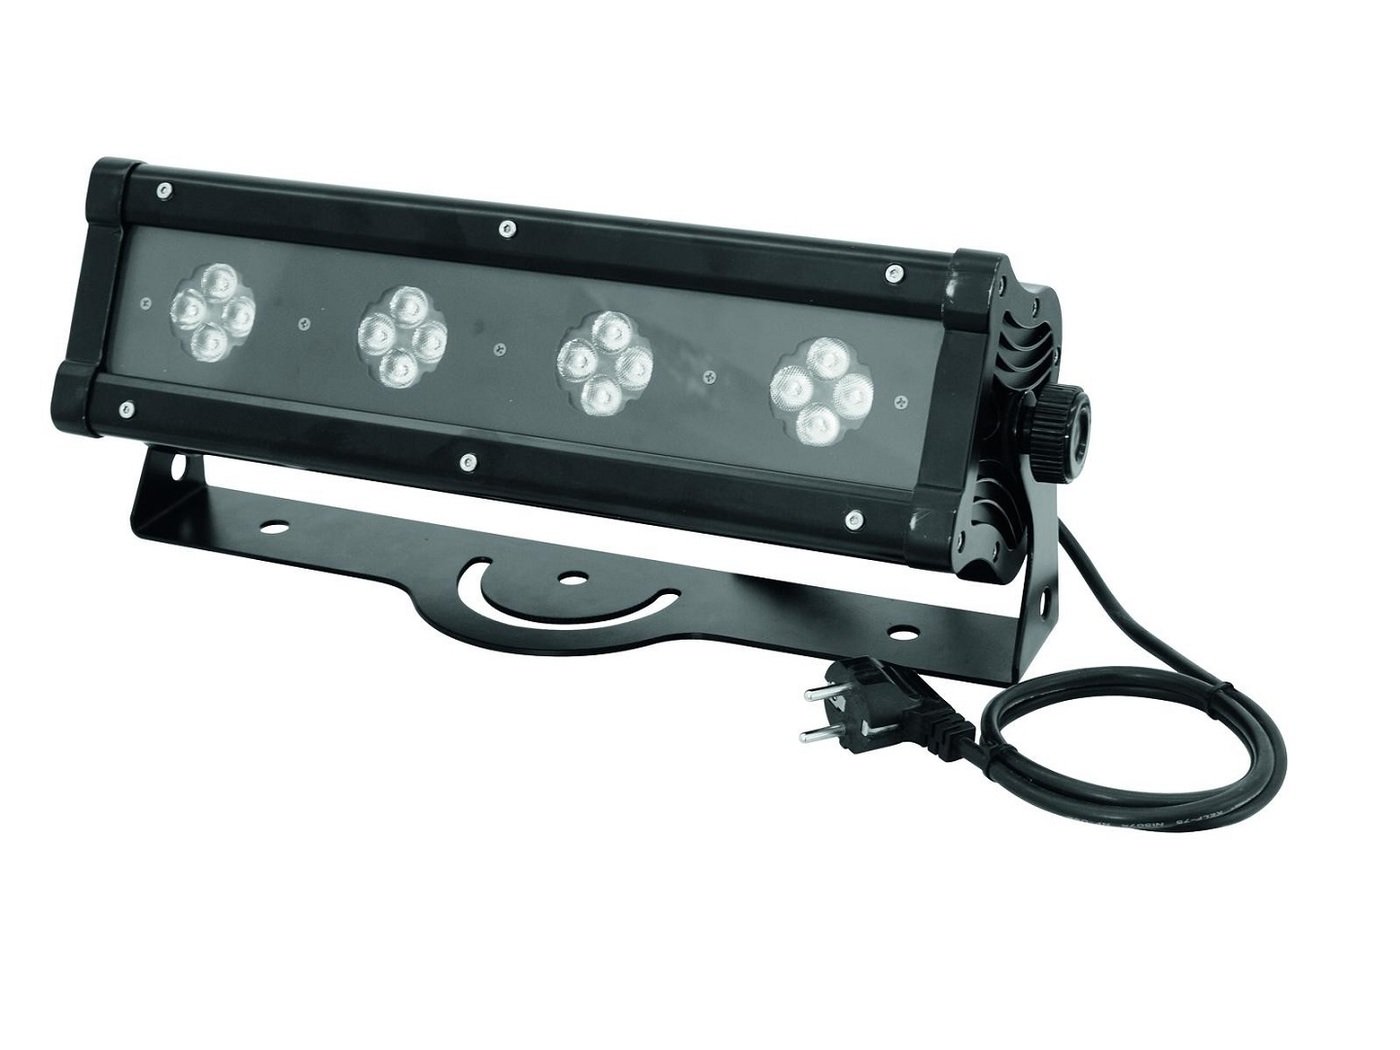 Eurolite LED BRK-16 RGBW 16x3W Bar Светодиодный светильник. 16 штук 3Вт RGBW светодиодов